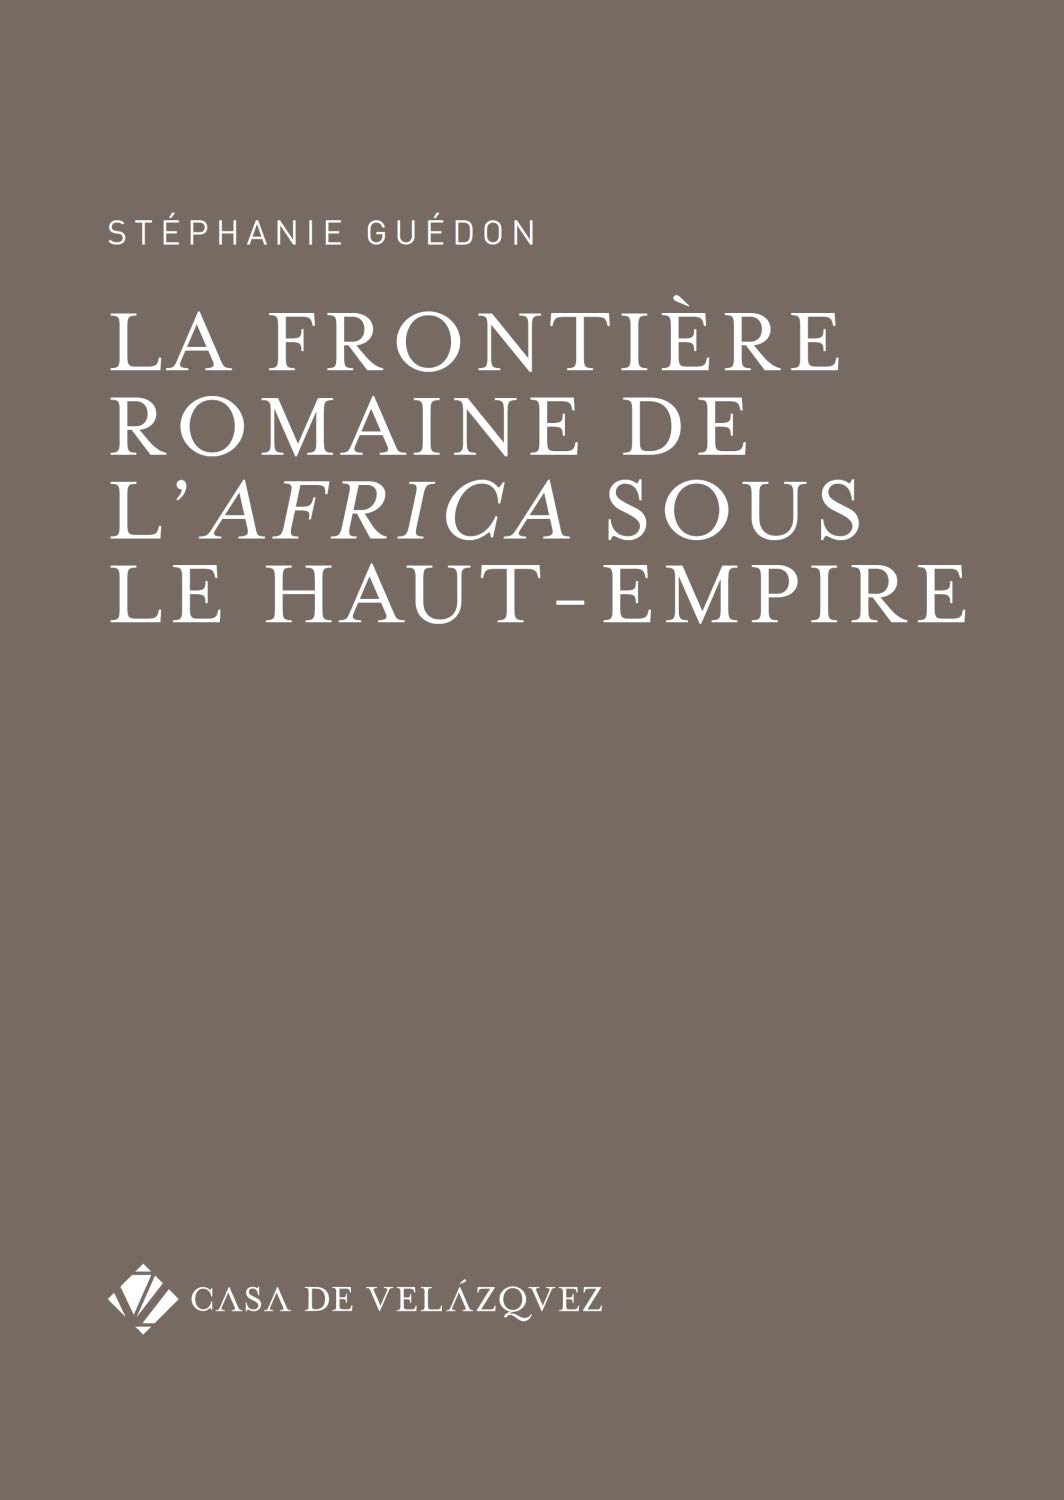 La frontière romaine de l'Africa sous le Haut-Empire, 2018, 390 p.